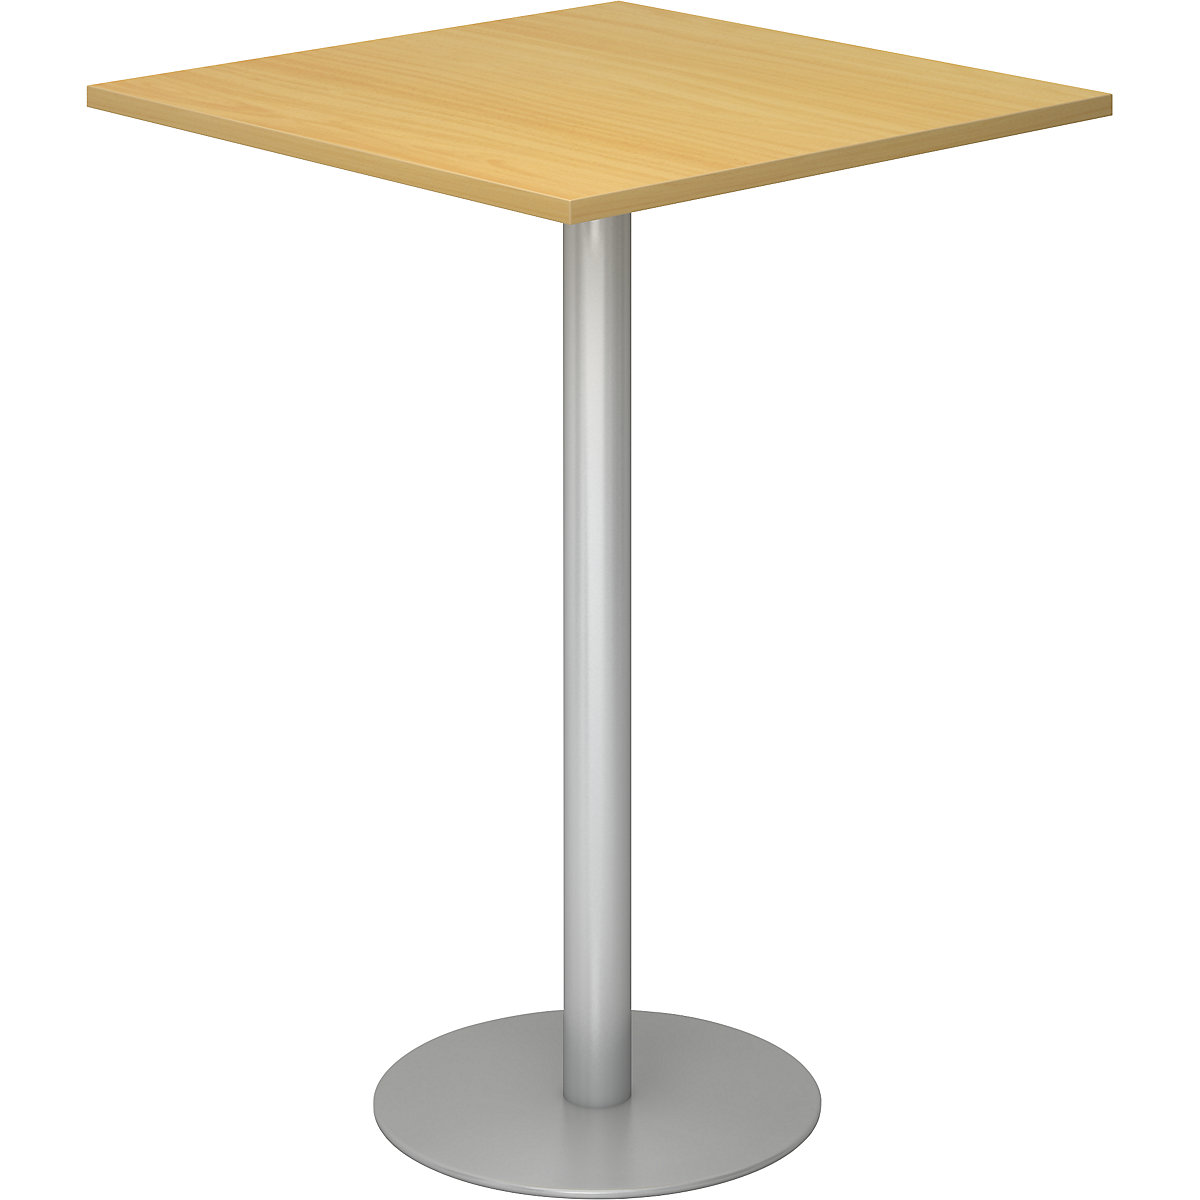 Állóasztal, h x szé 800 x 800 mm, 1116 mm magas, ezüst váz, bükk-dekor asztallap